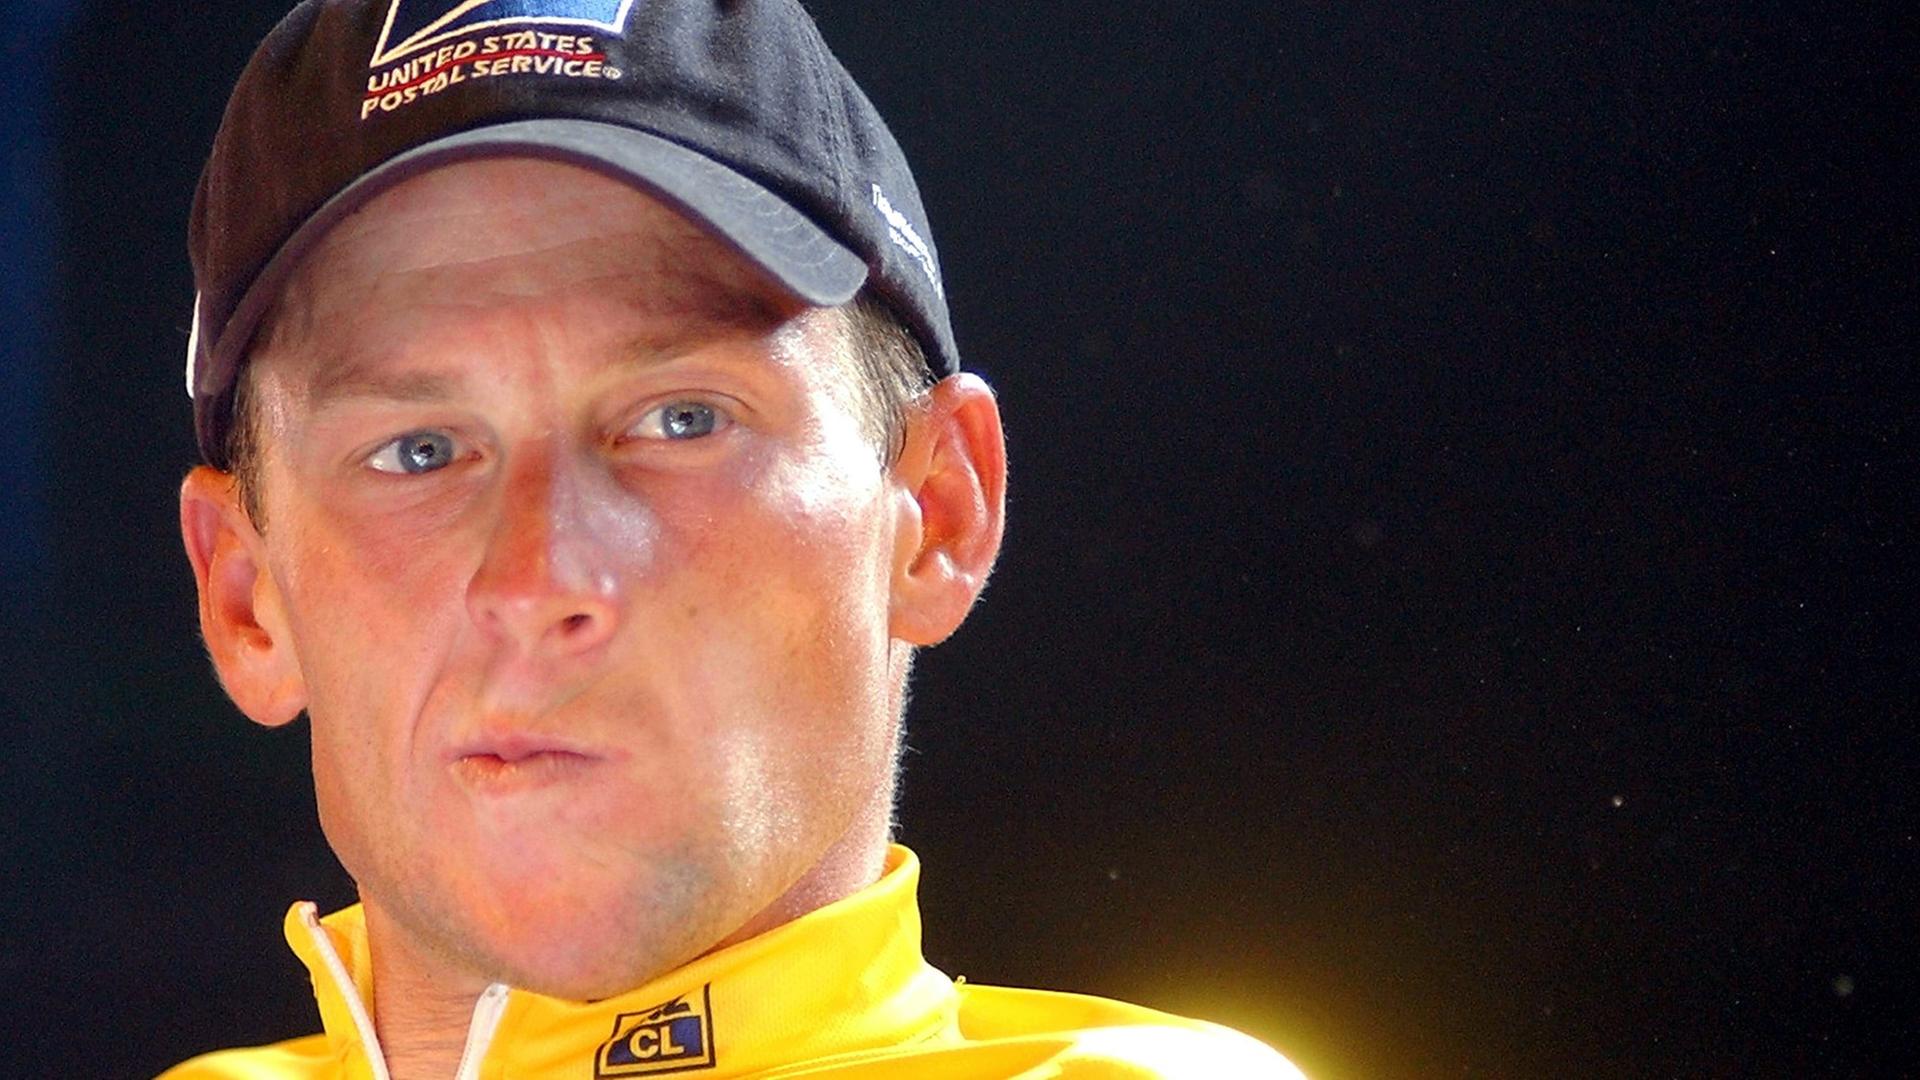 Der amerikanische Radsportler Lance Armstrong guckt kritisch